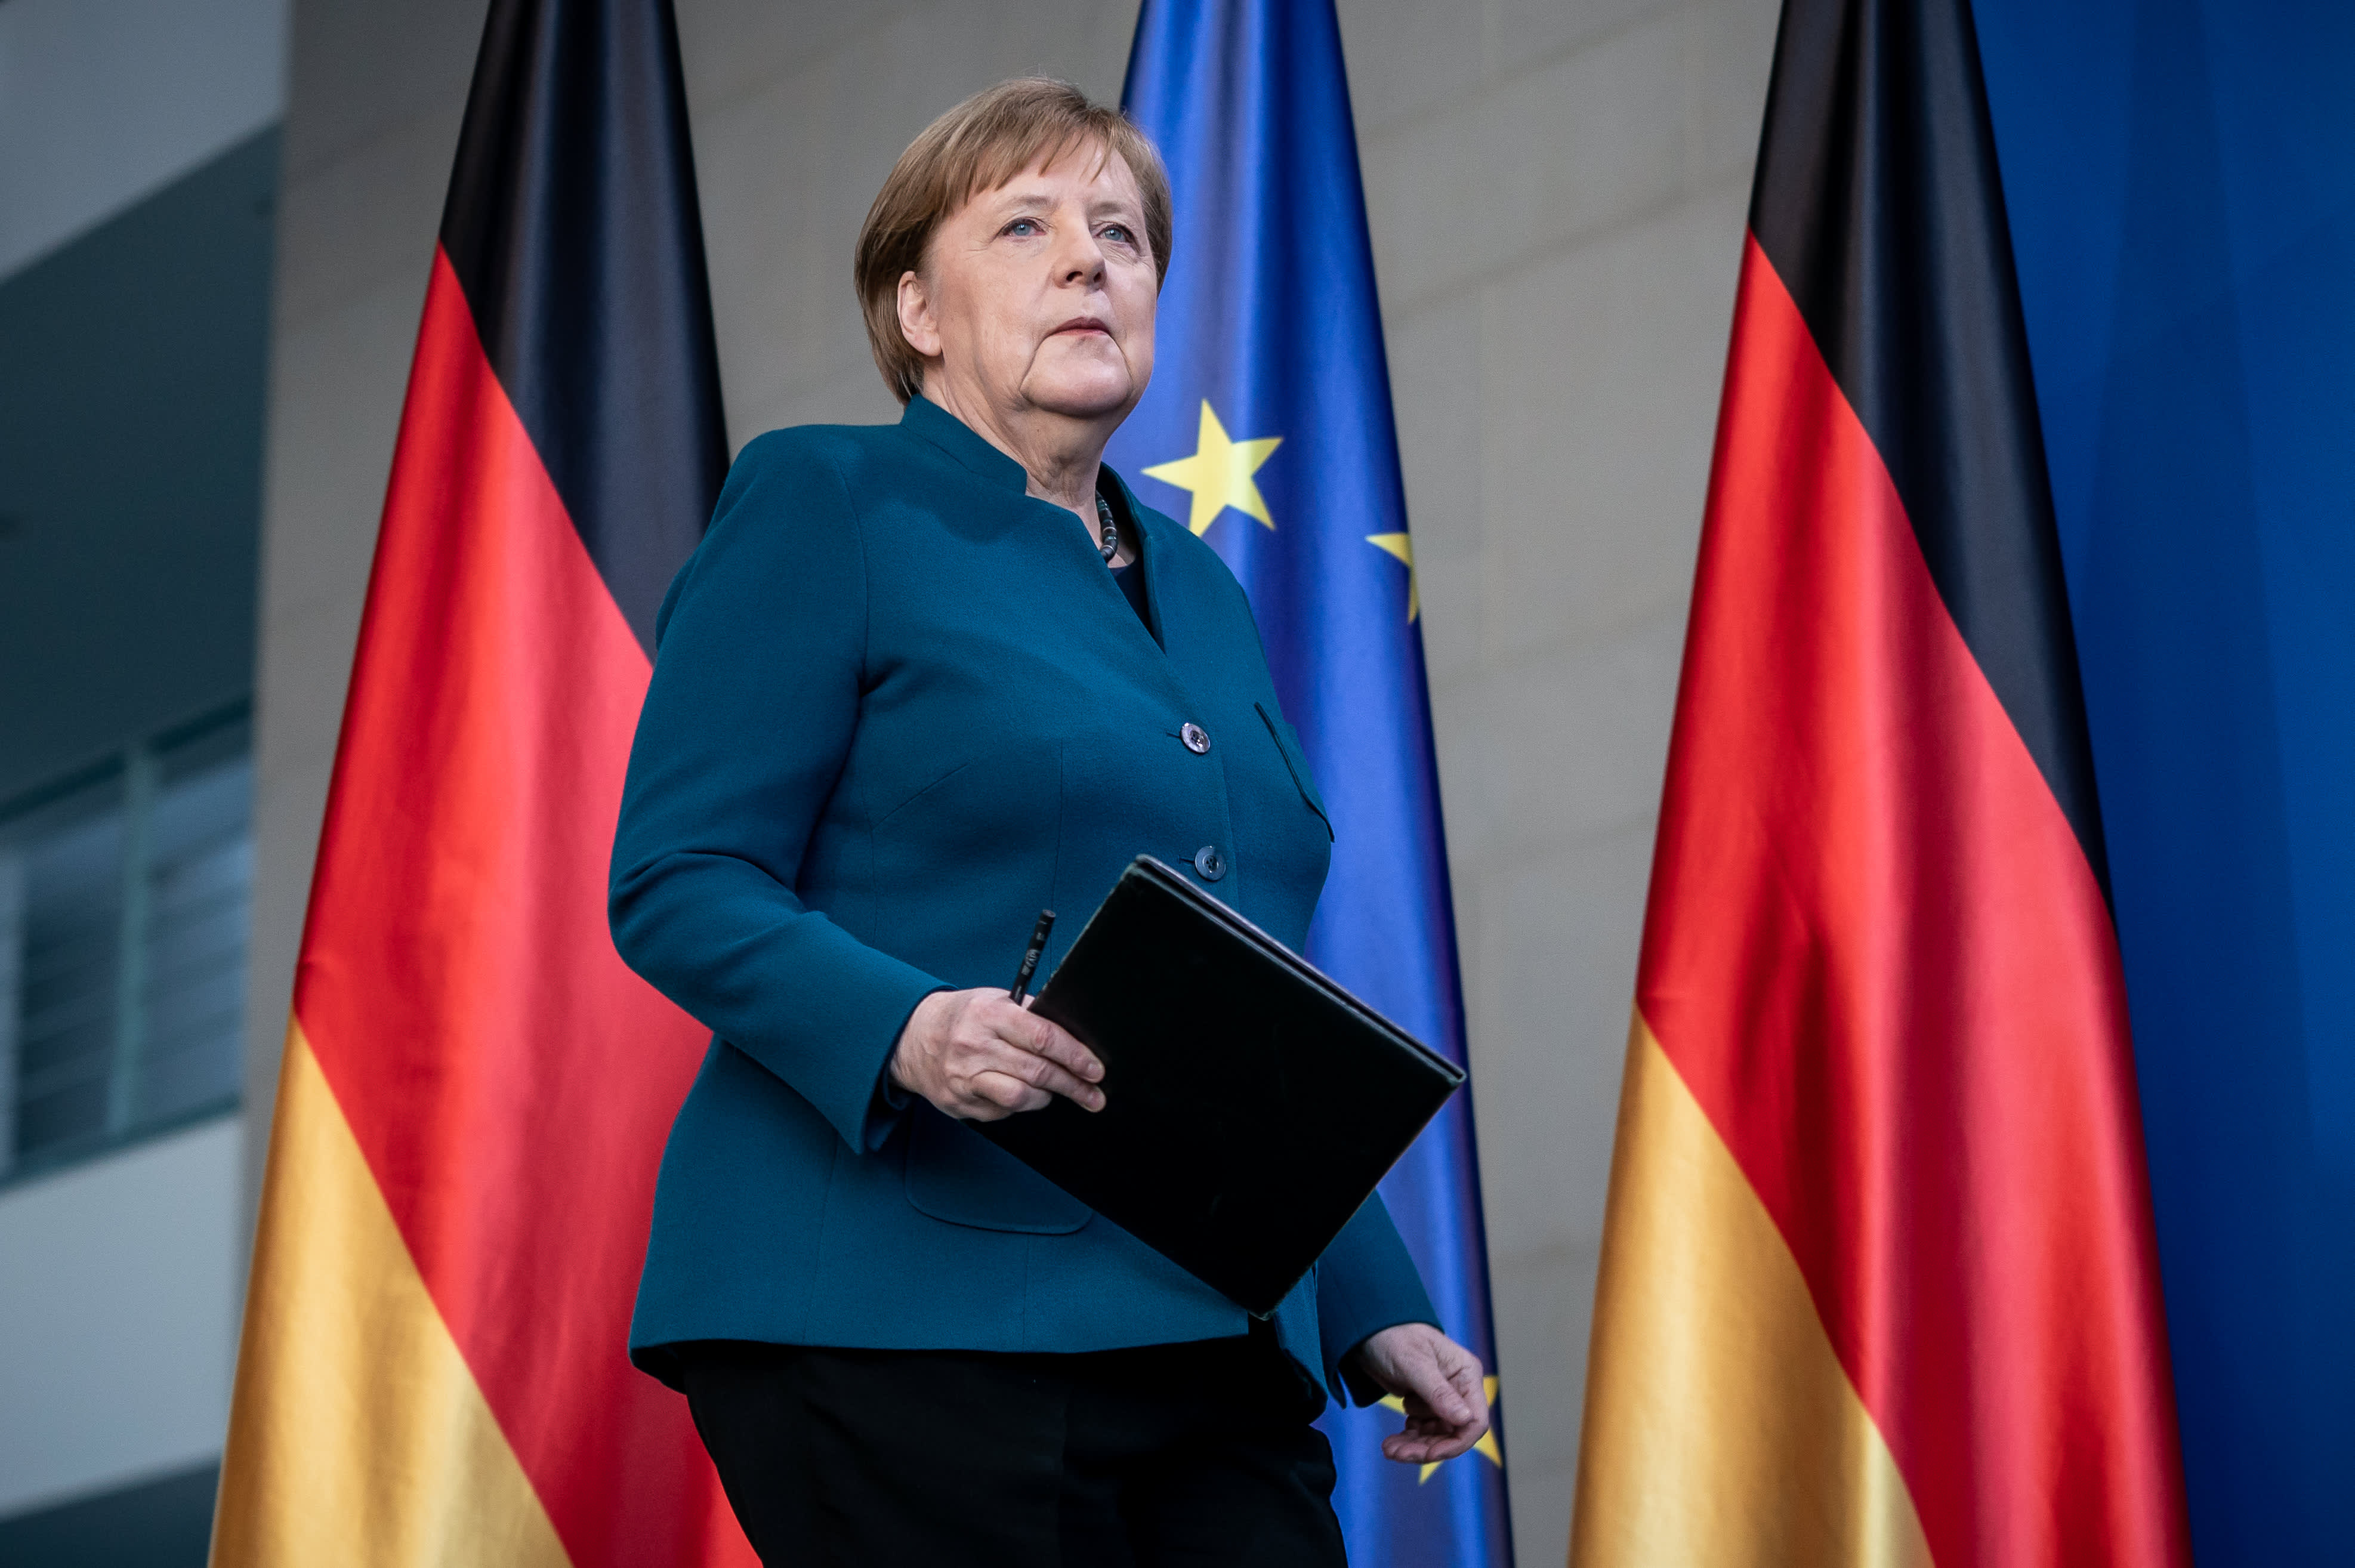 Политики евросоюза. Ангела Меркель. Германия ангела Меркель. Канцлер ФРГ Меркель. Германия ангела Меркель 2020.